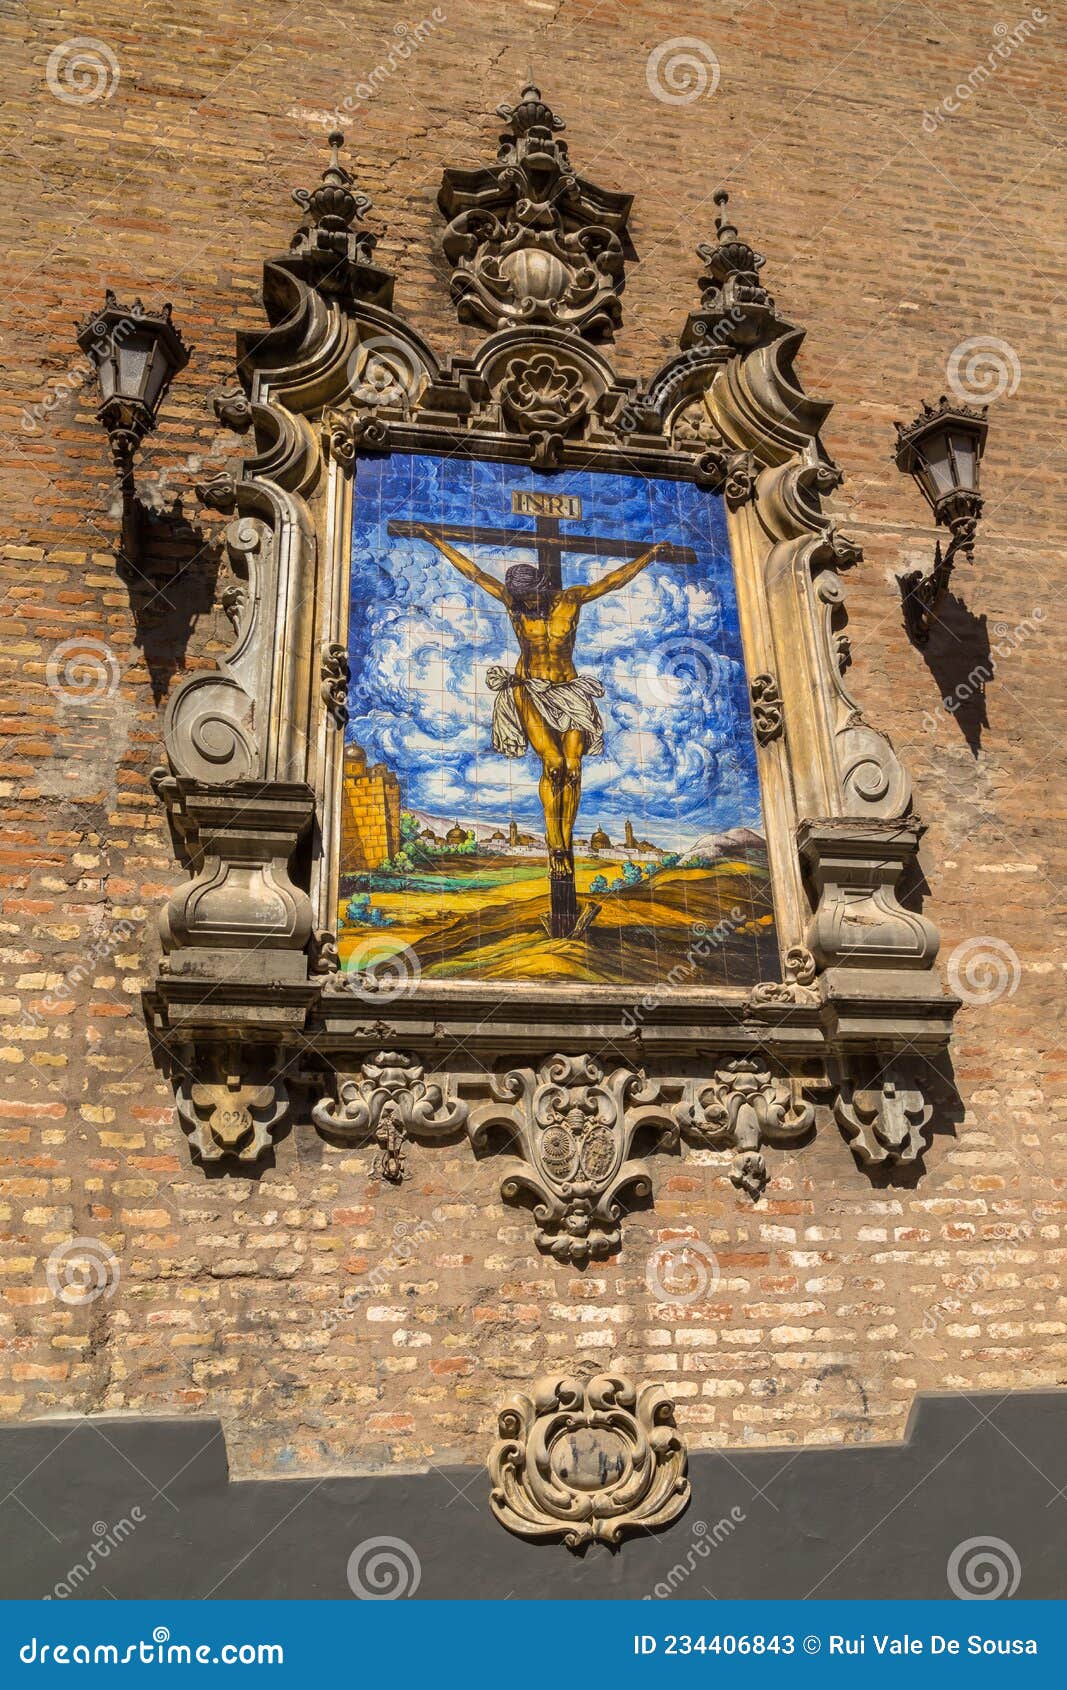 azulejo showing jesus